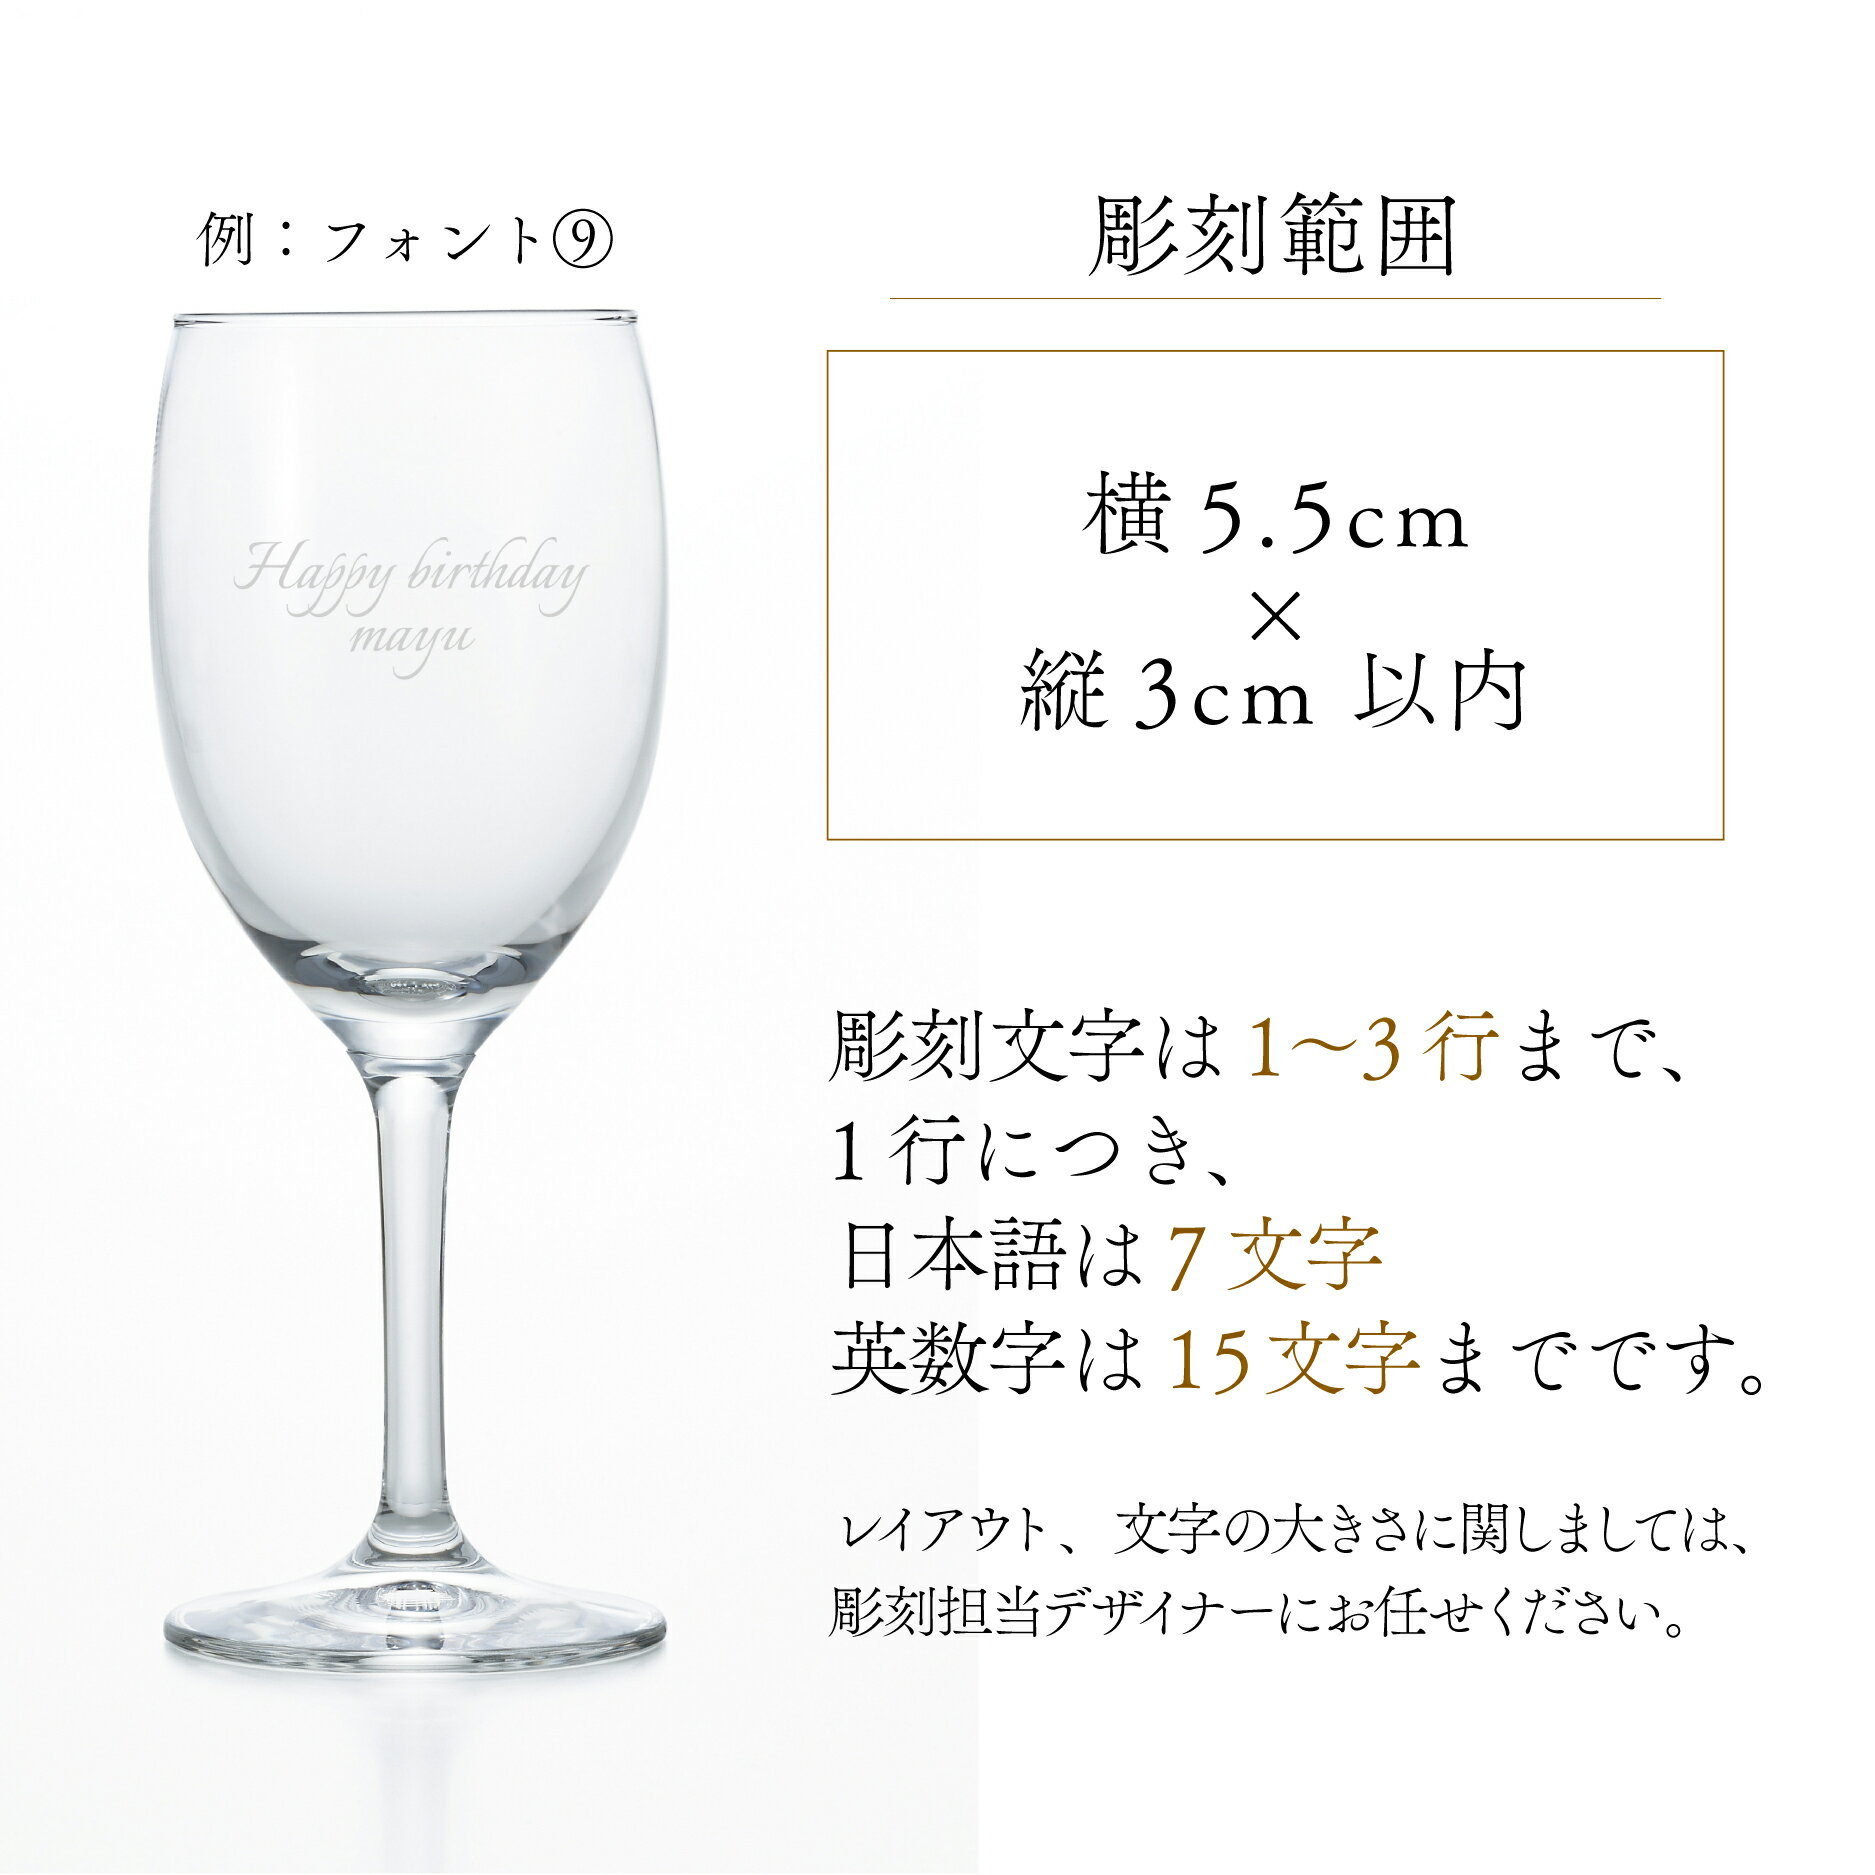 名入れ ワイングラス 敬老の日 180ml ワイン シャンパン 誕生日プレゼント グラス 記念品